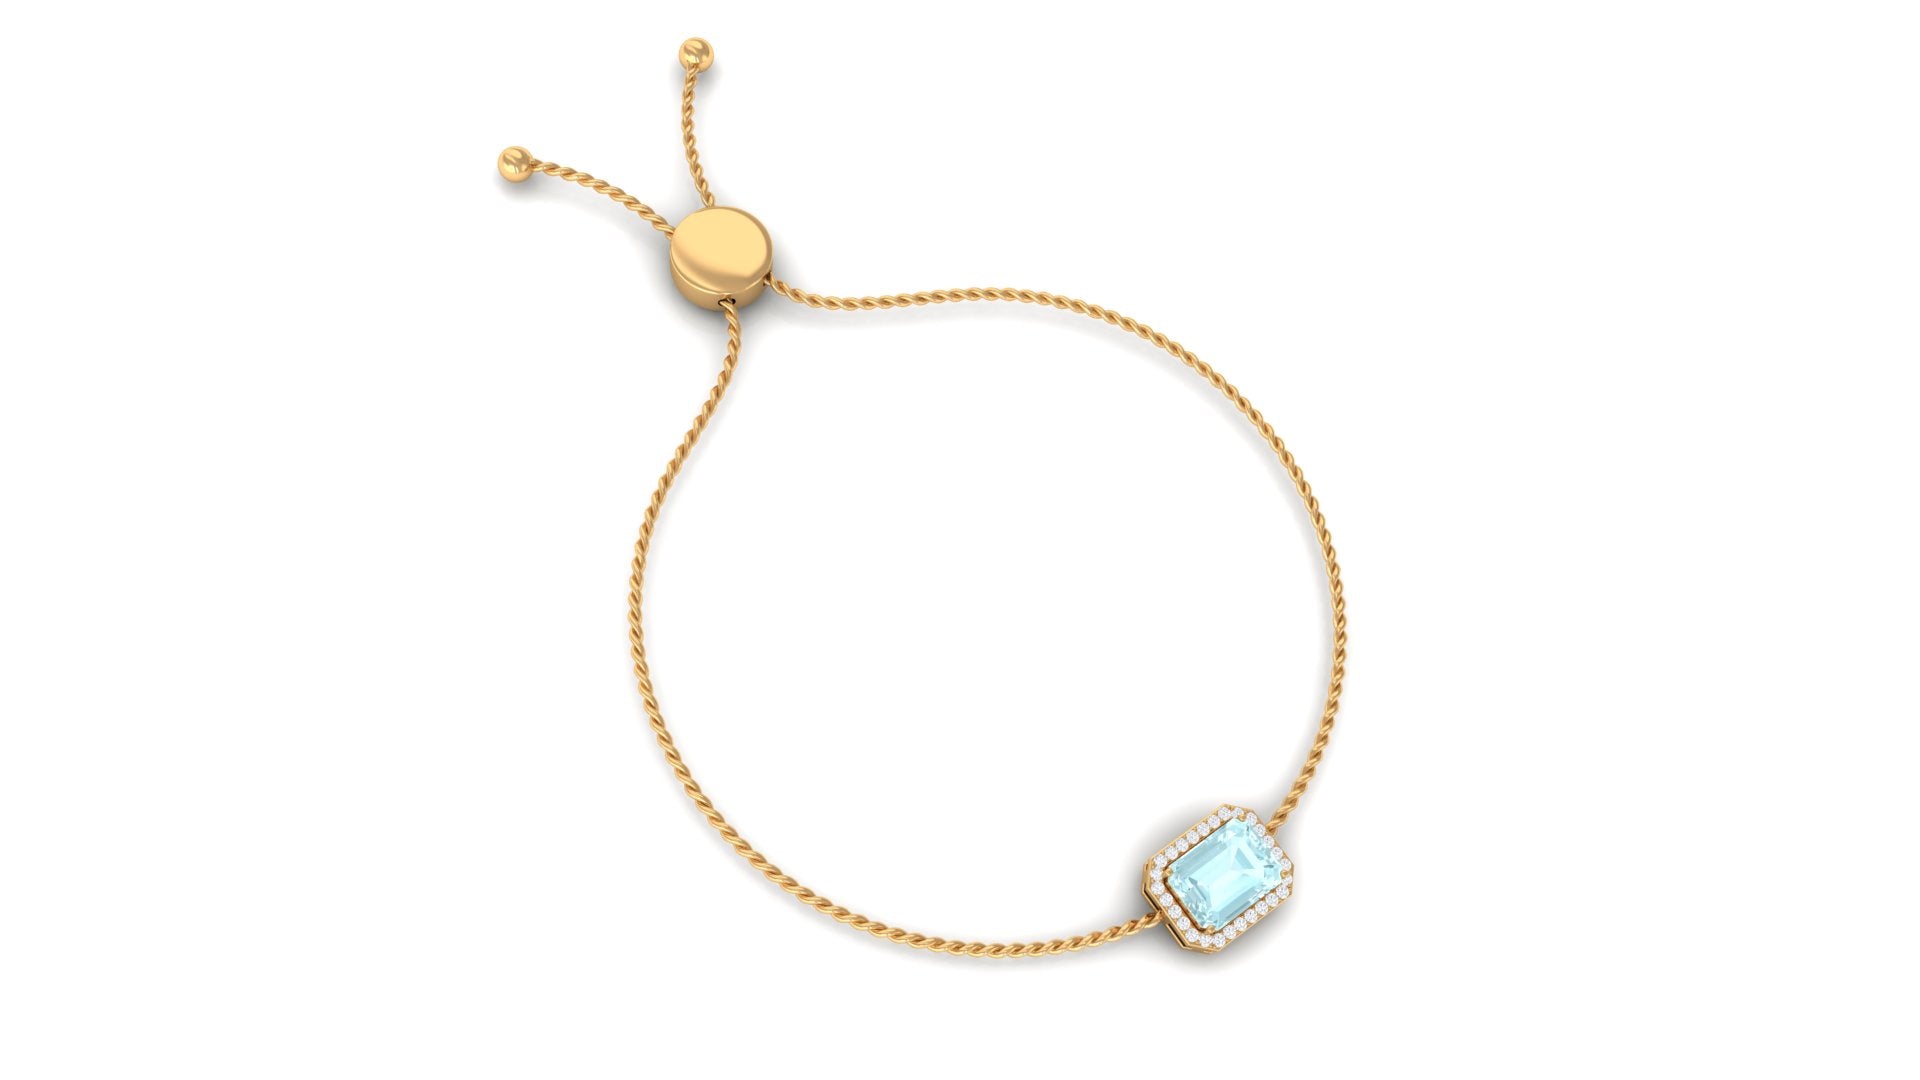 Swiss Blue Topaz Bolo Chain Bracelet with Diamond Sky Blue Topaz - ( AAA ) - Quality - Rosec Jewels